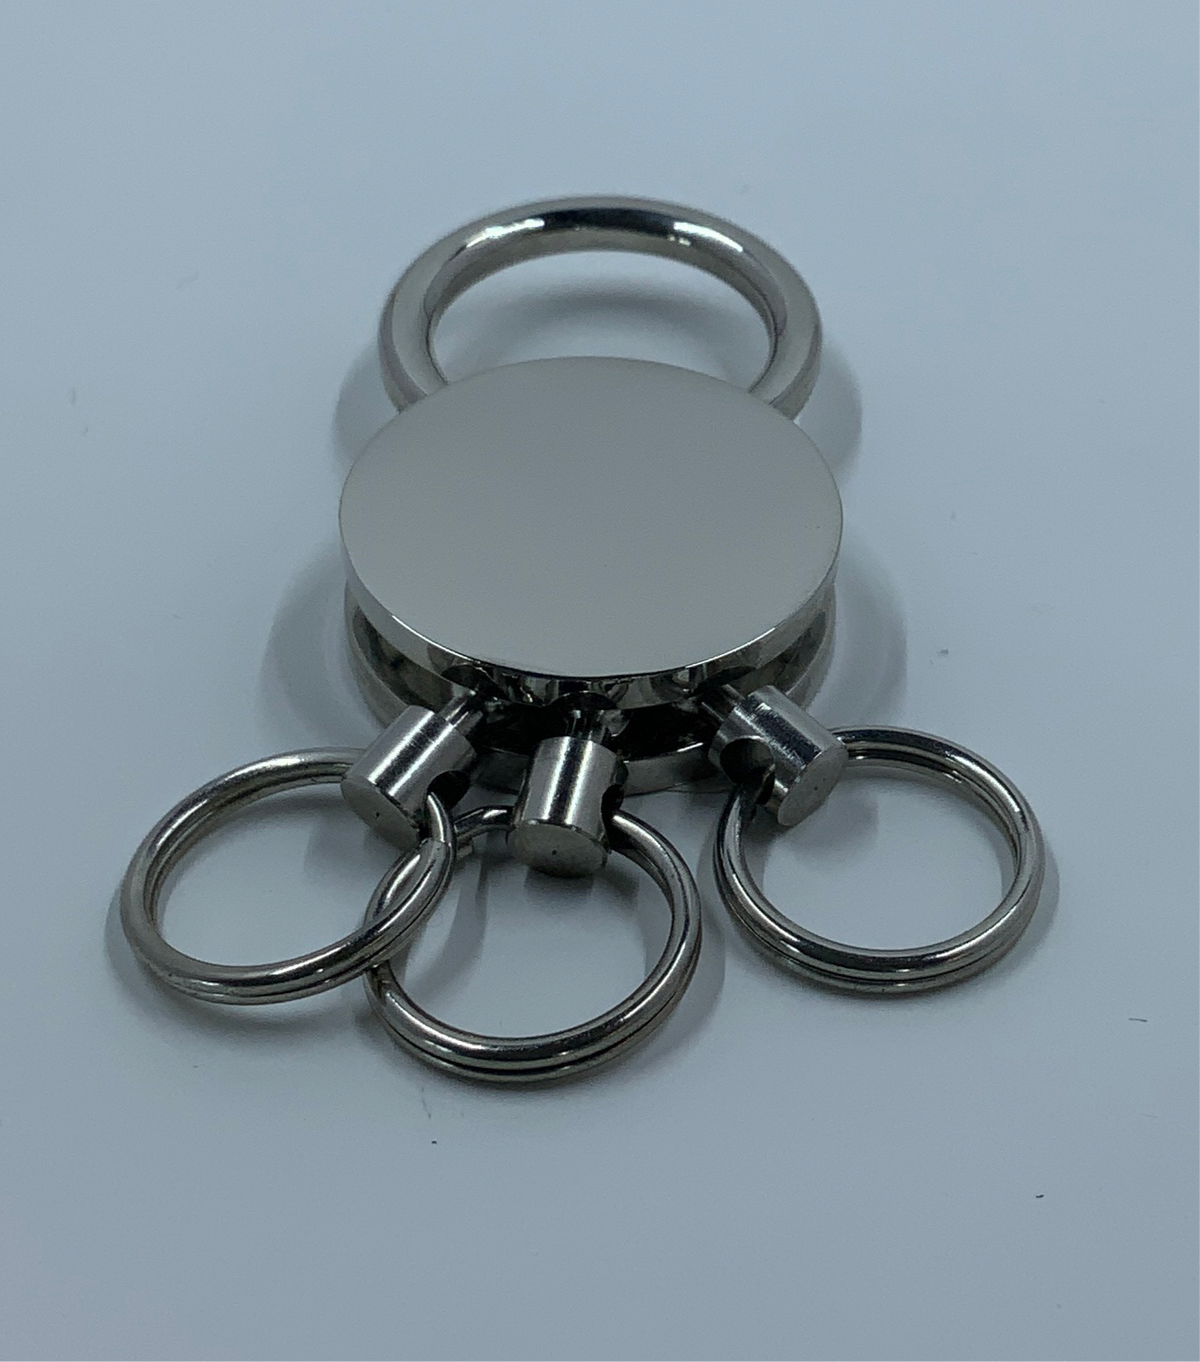 Valet Key Ring